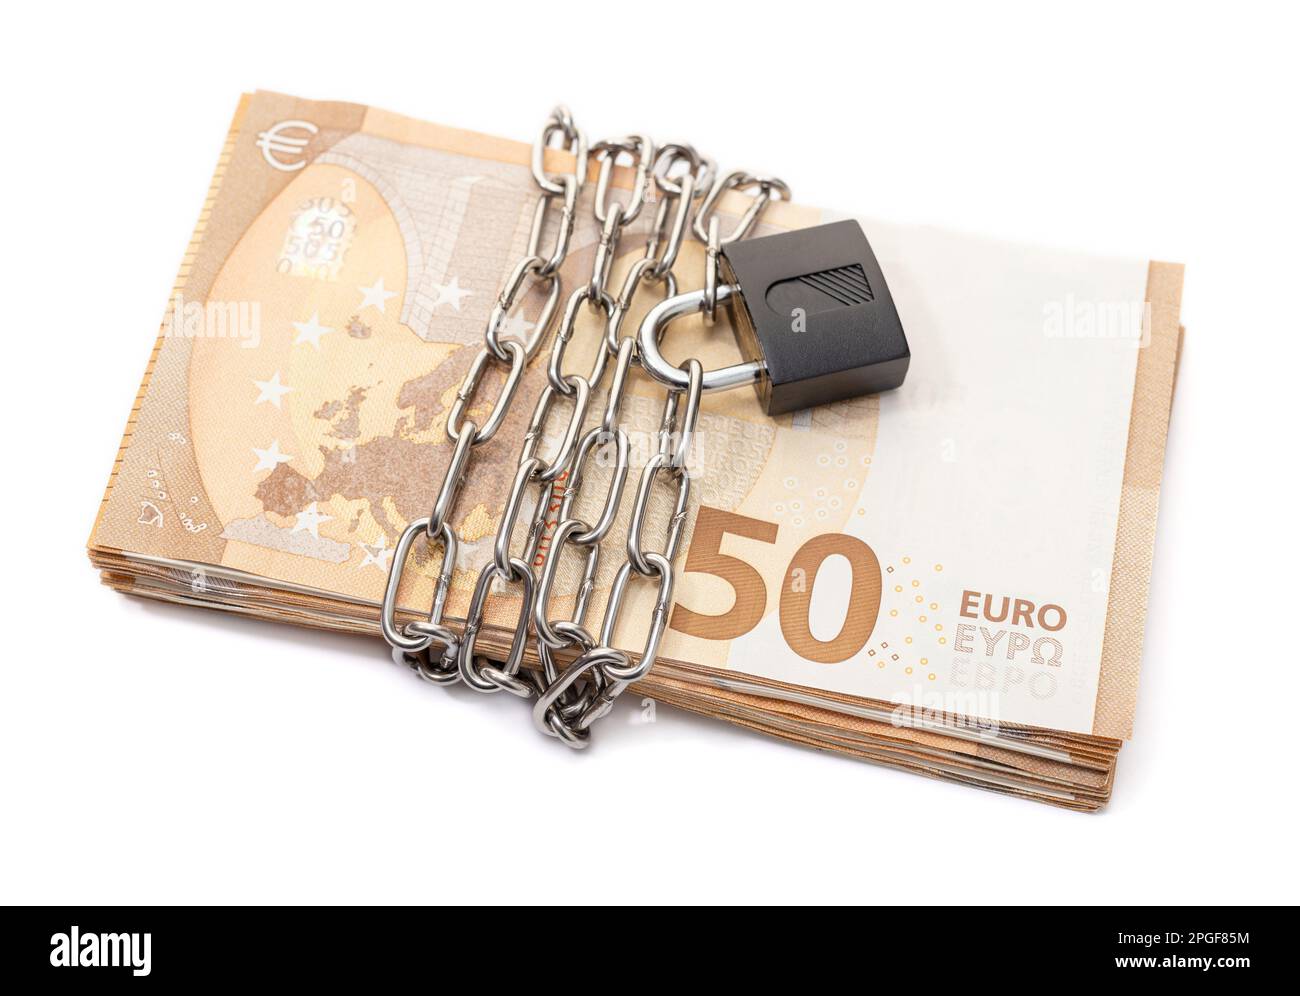 Verrouillez la sécurité et la chaîne sur les billets de la pile en euros isolés sur fond blanc. Crise monétaire, problèmes financiers, notion de défaut Banque D'Images